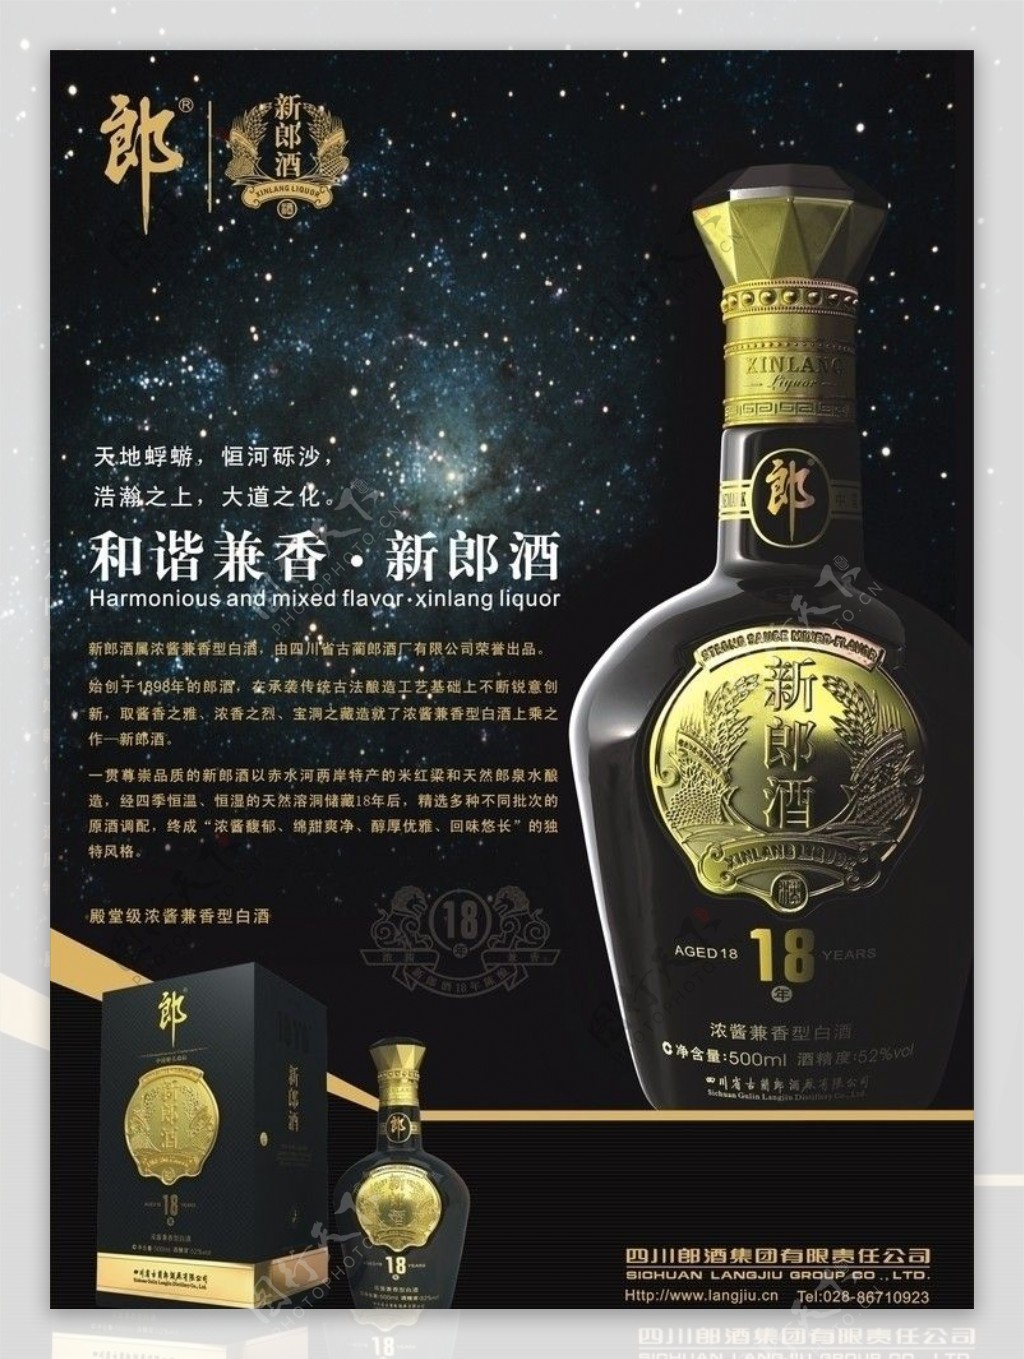 新郎酒18年广告画面